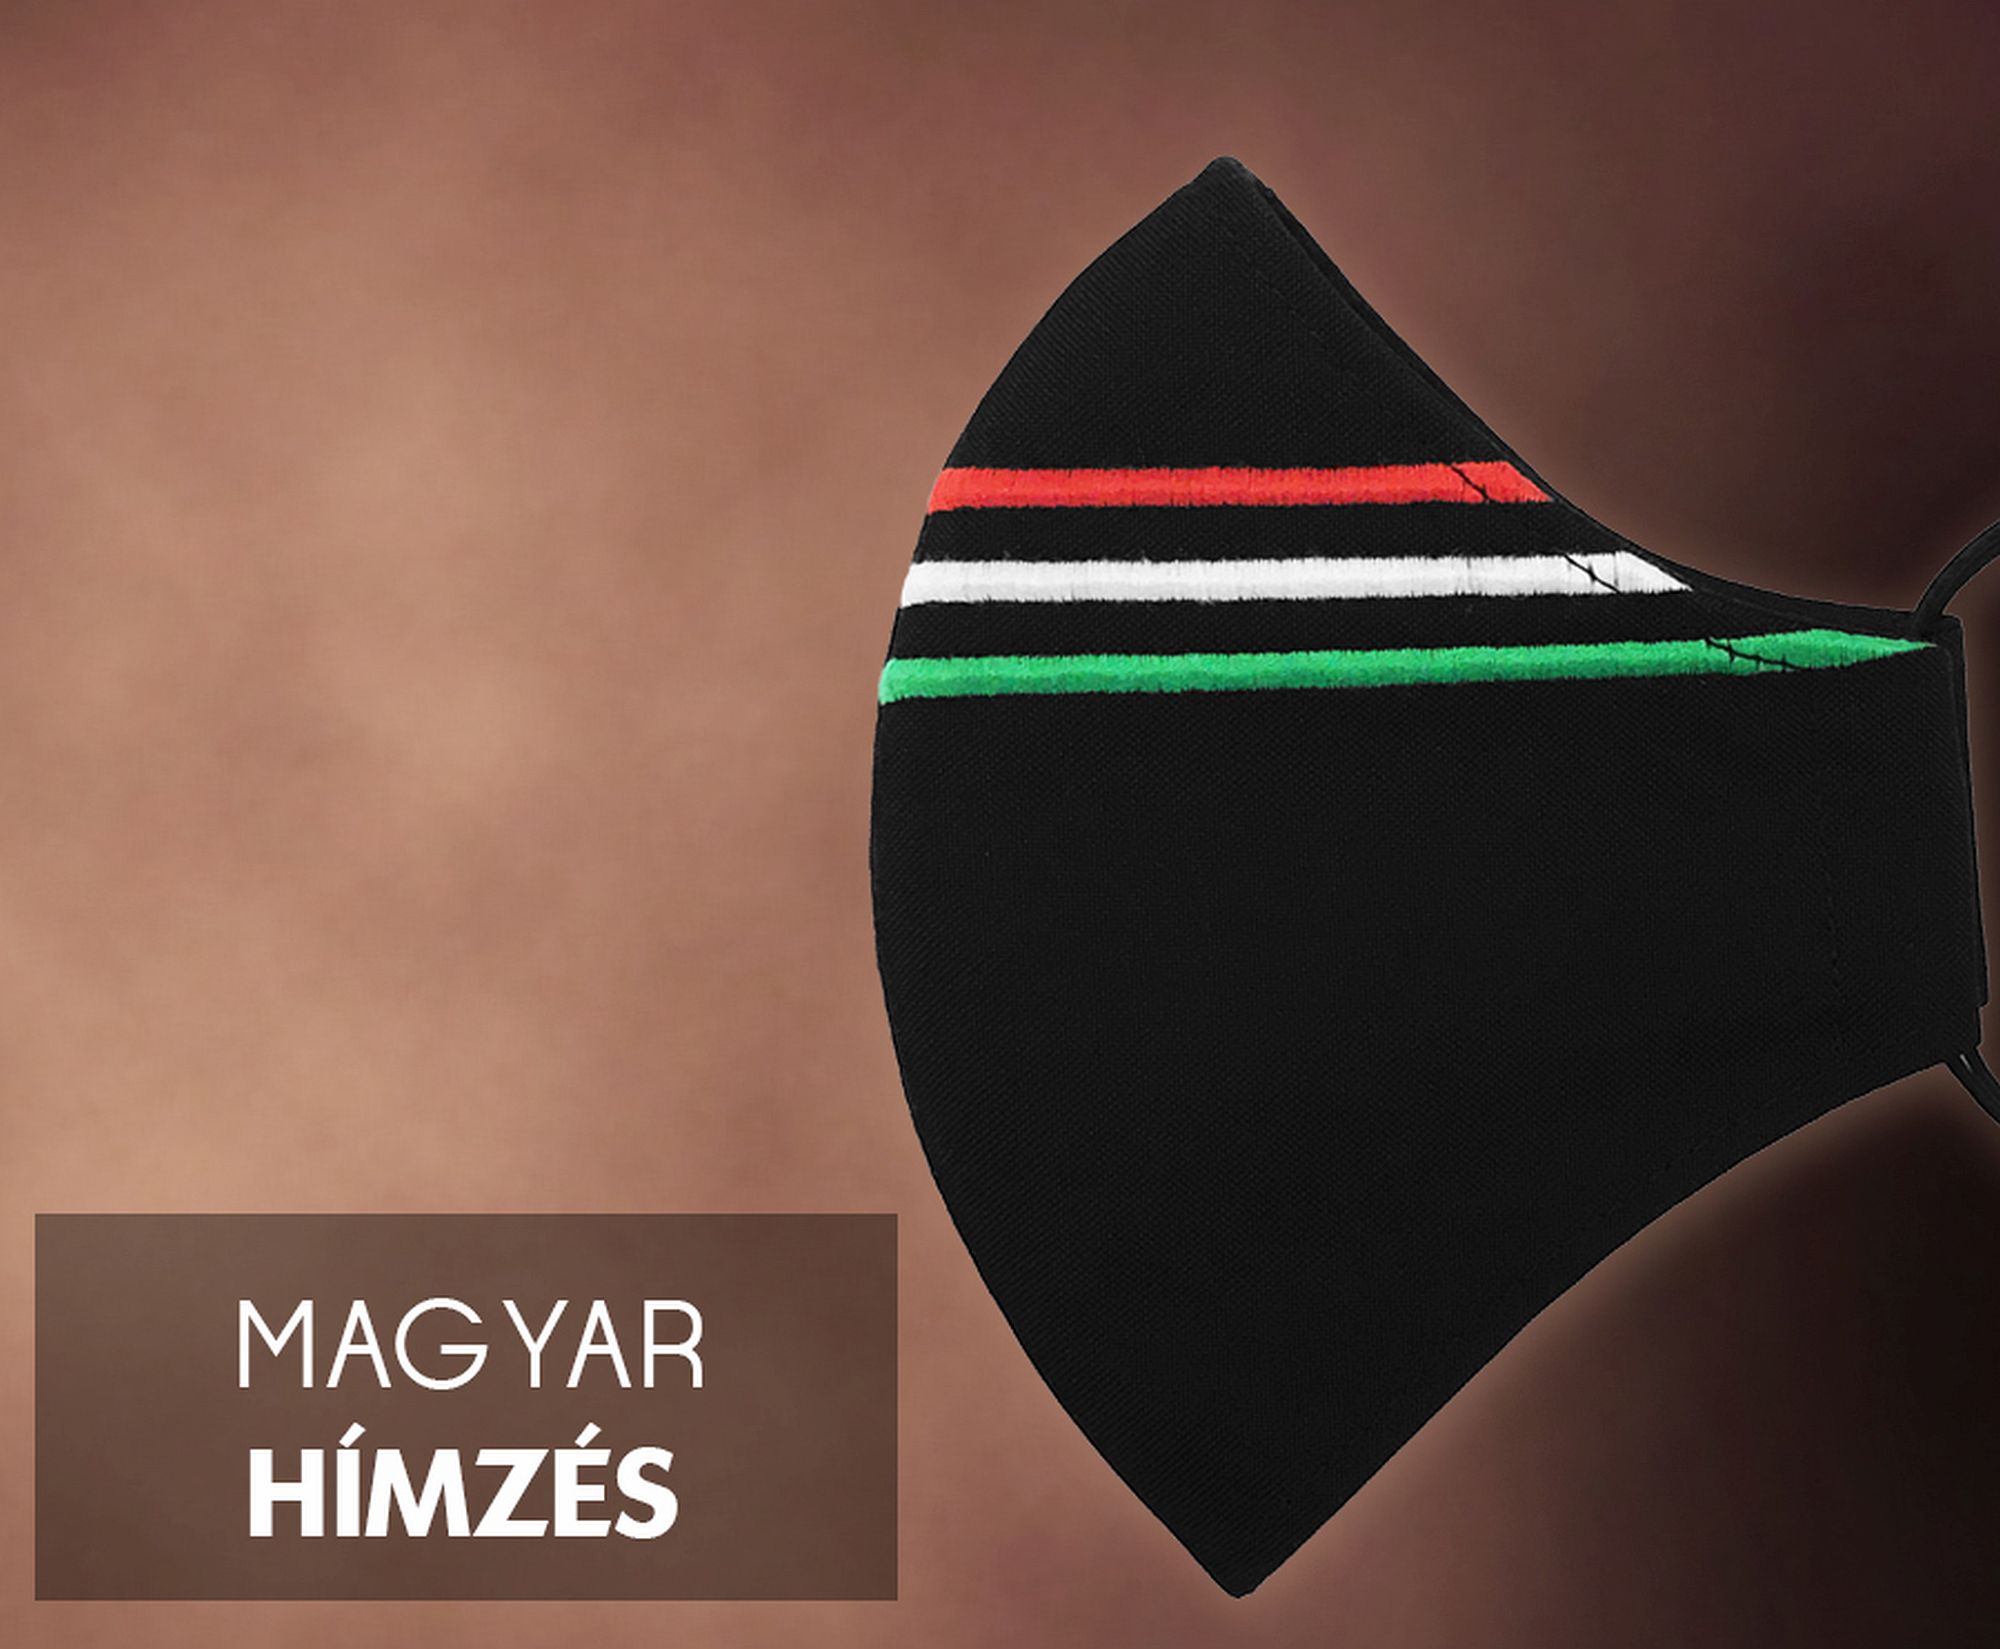 Magyar zászlós maszk